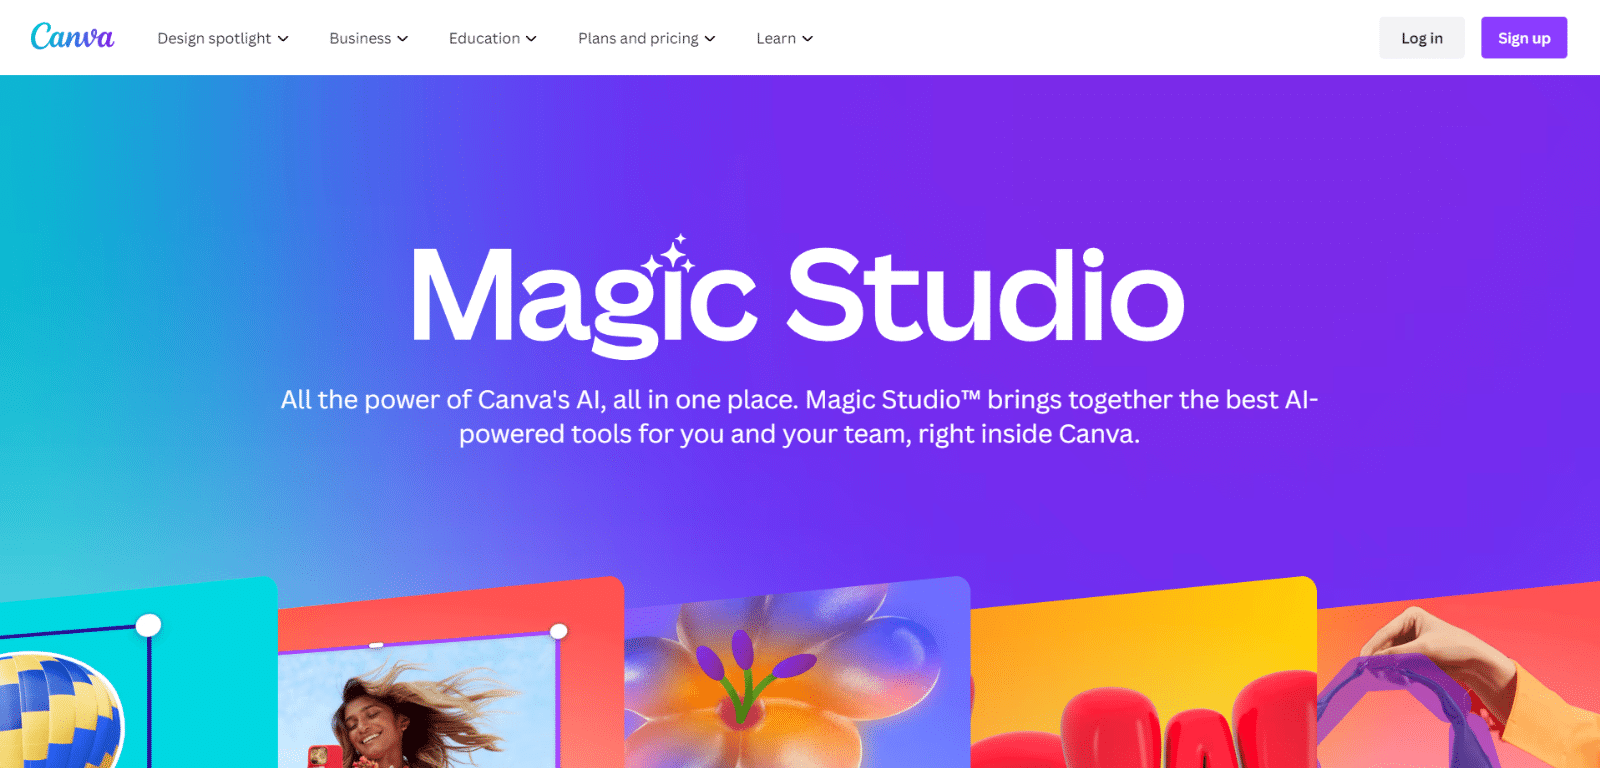 Canva Magic Studio AI tool